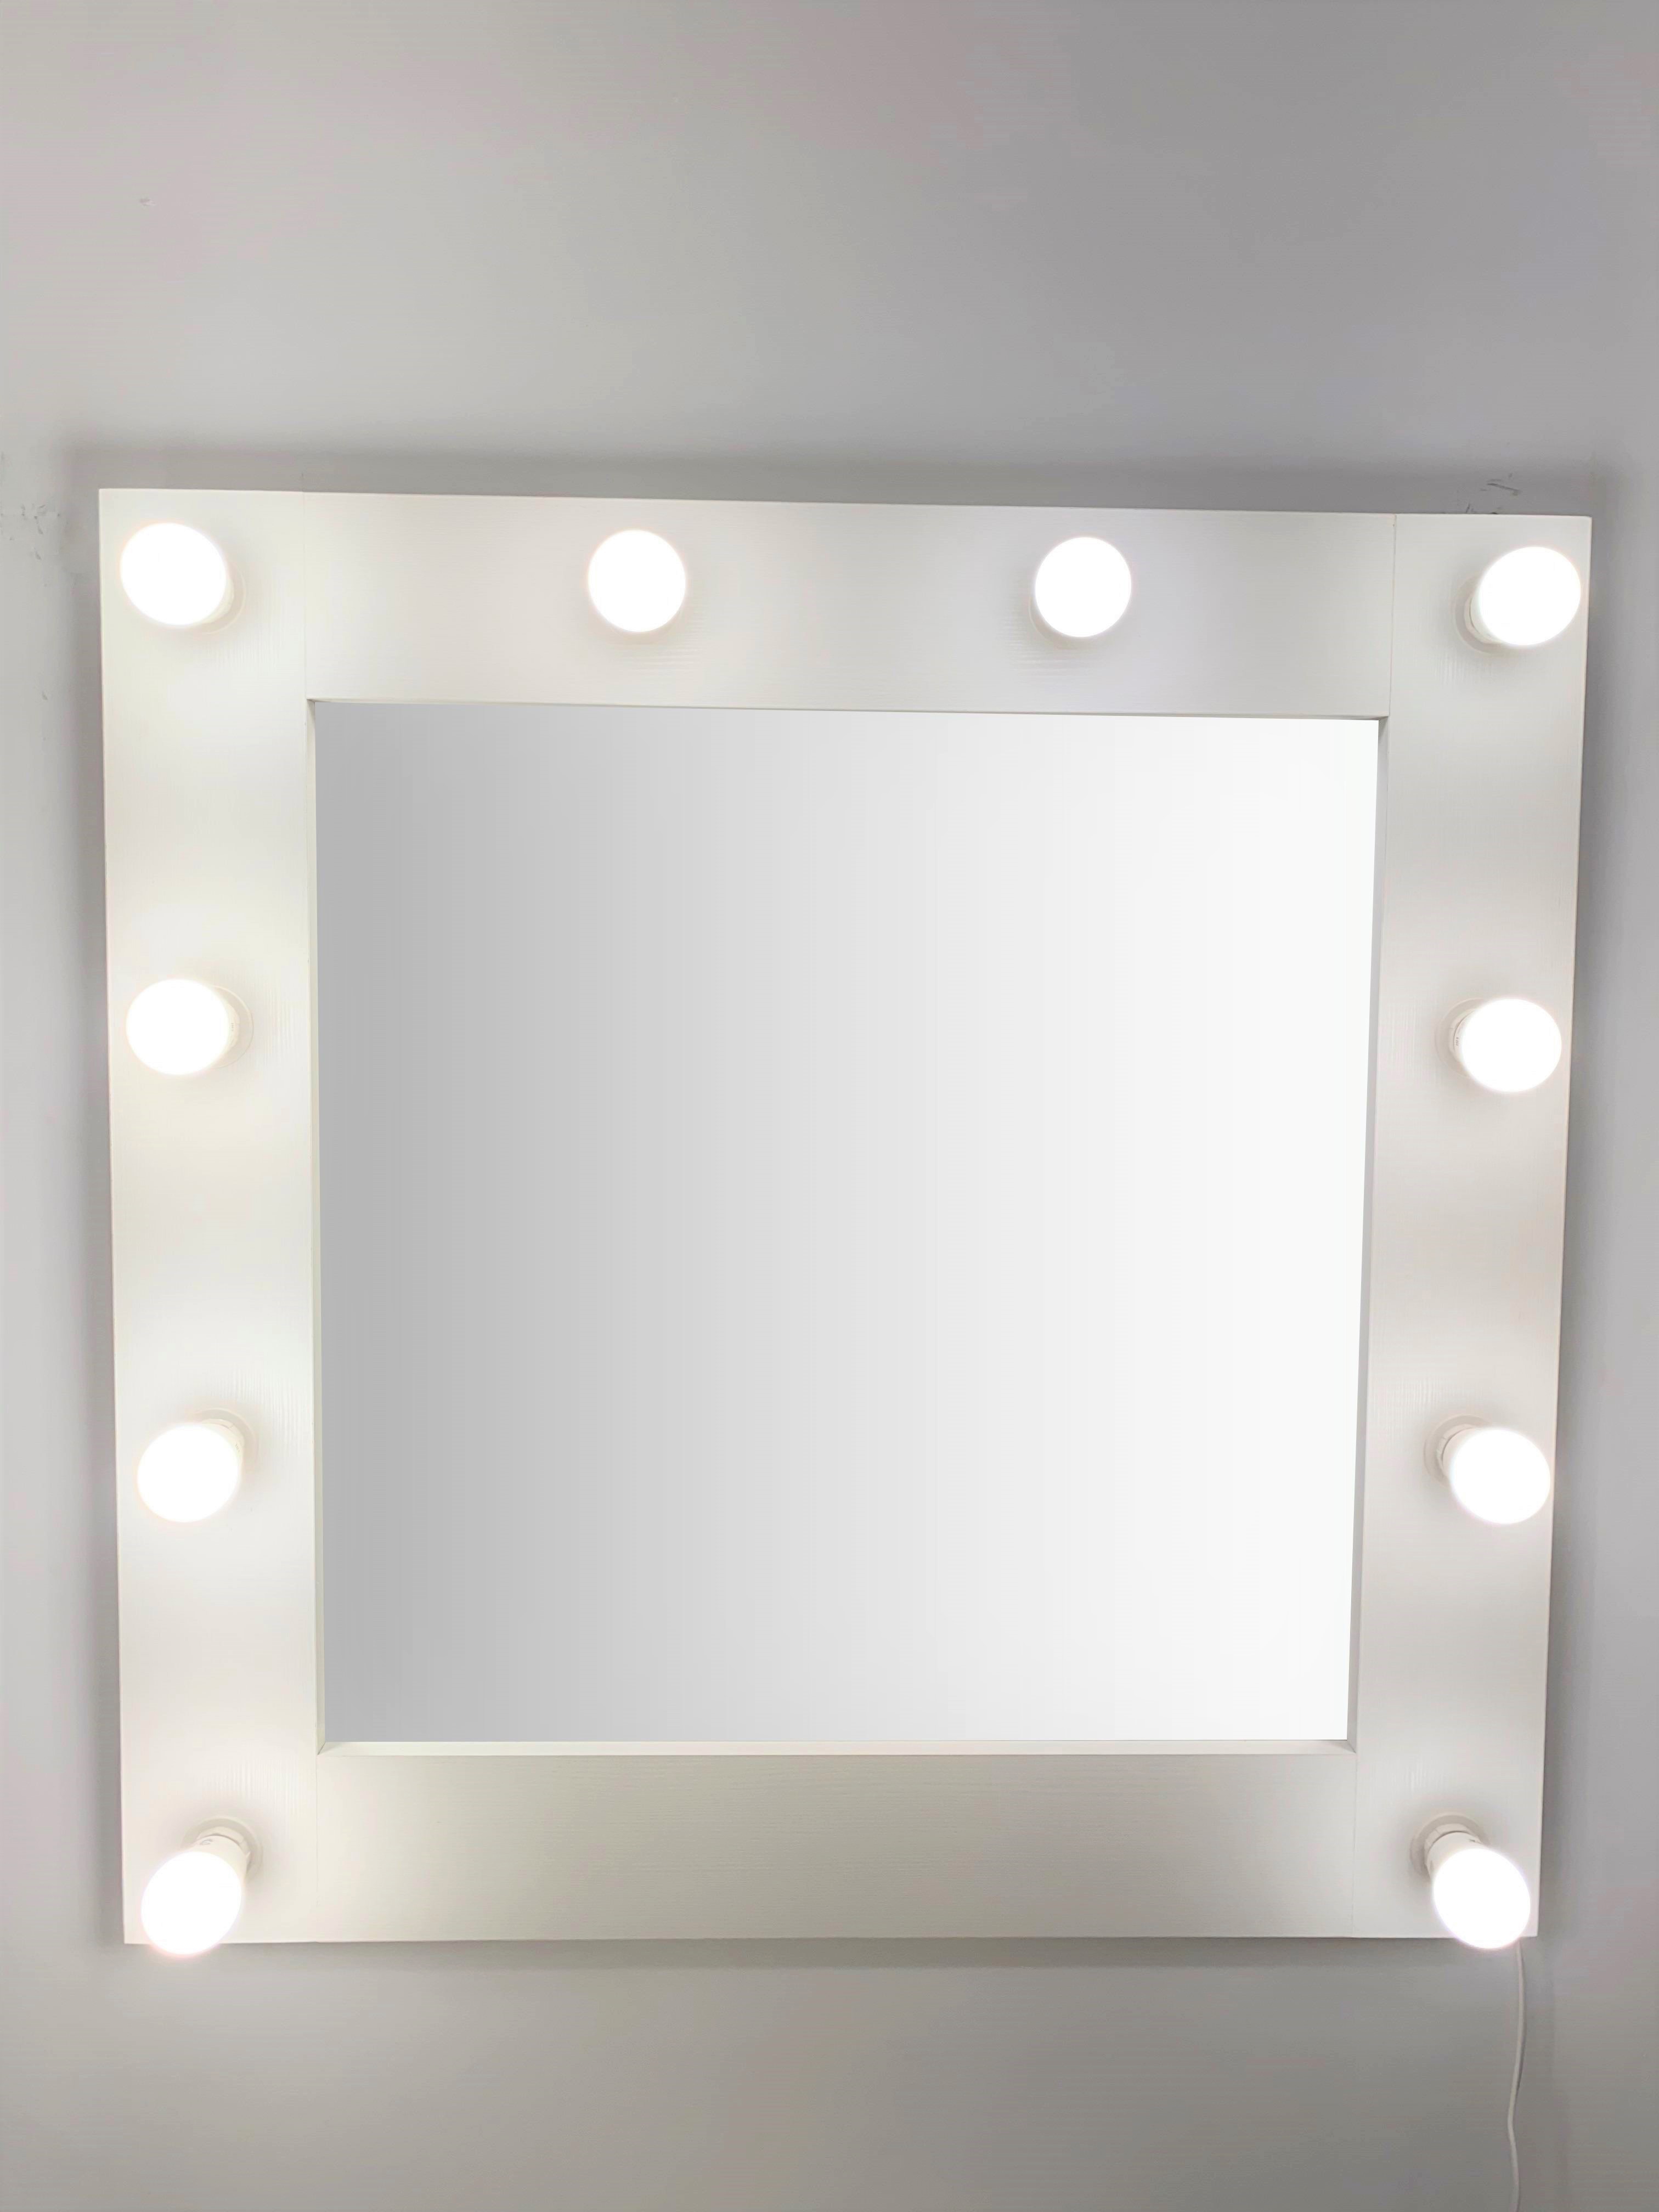 91053081 Гримерное зеркало с лампочками 75x75 см цвет белый STLM-0458991 BEAUTYUP